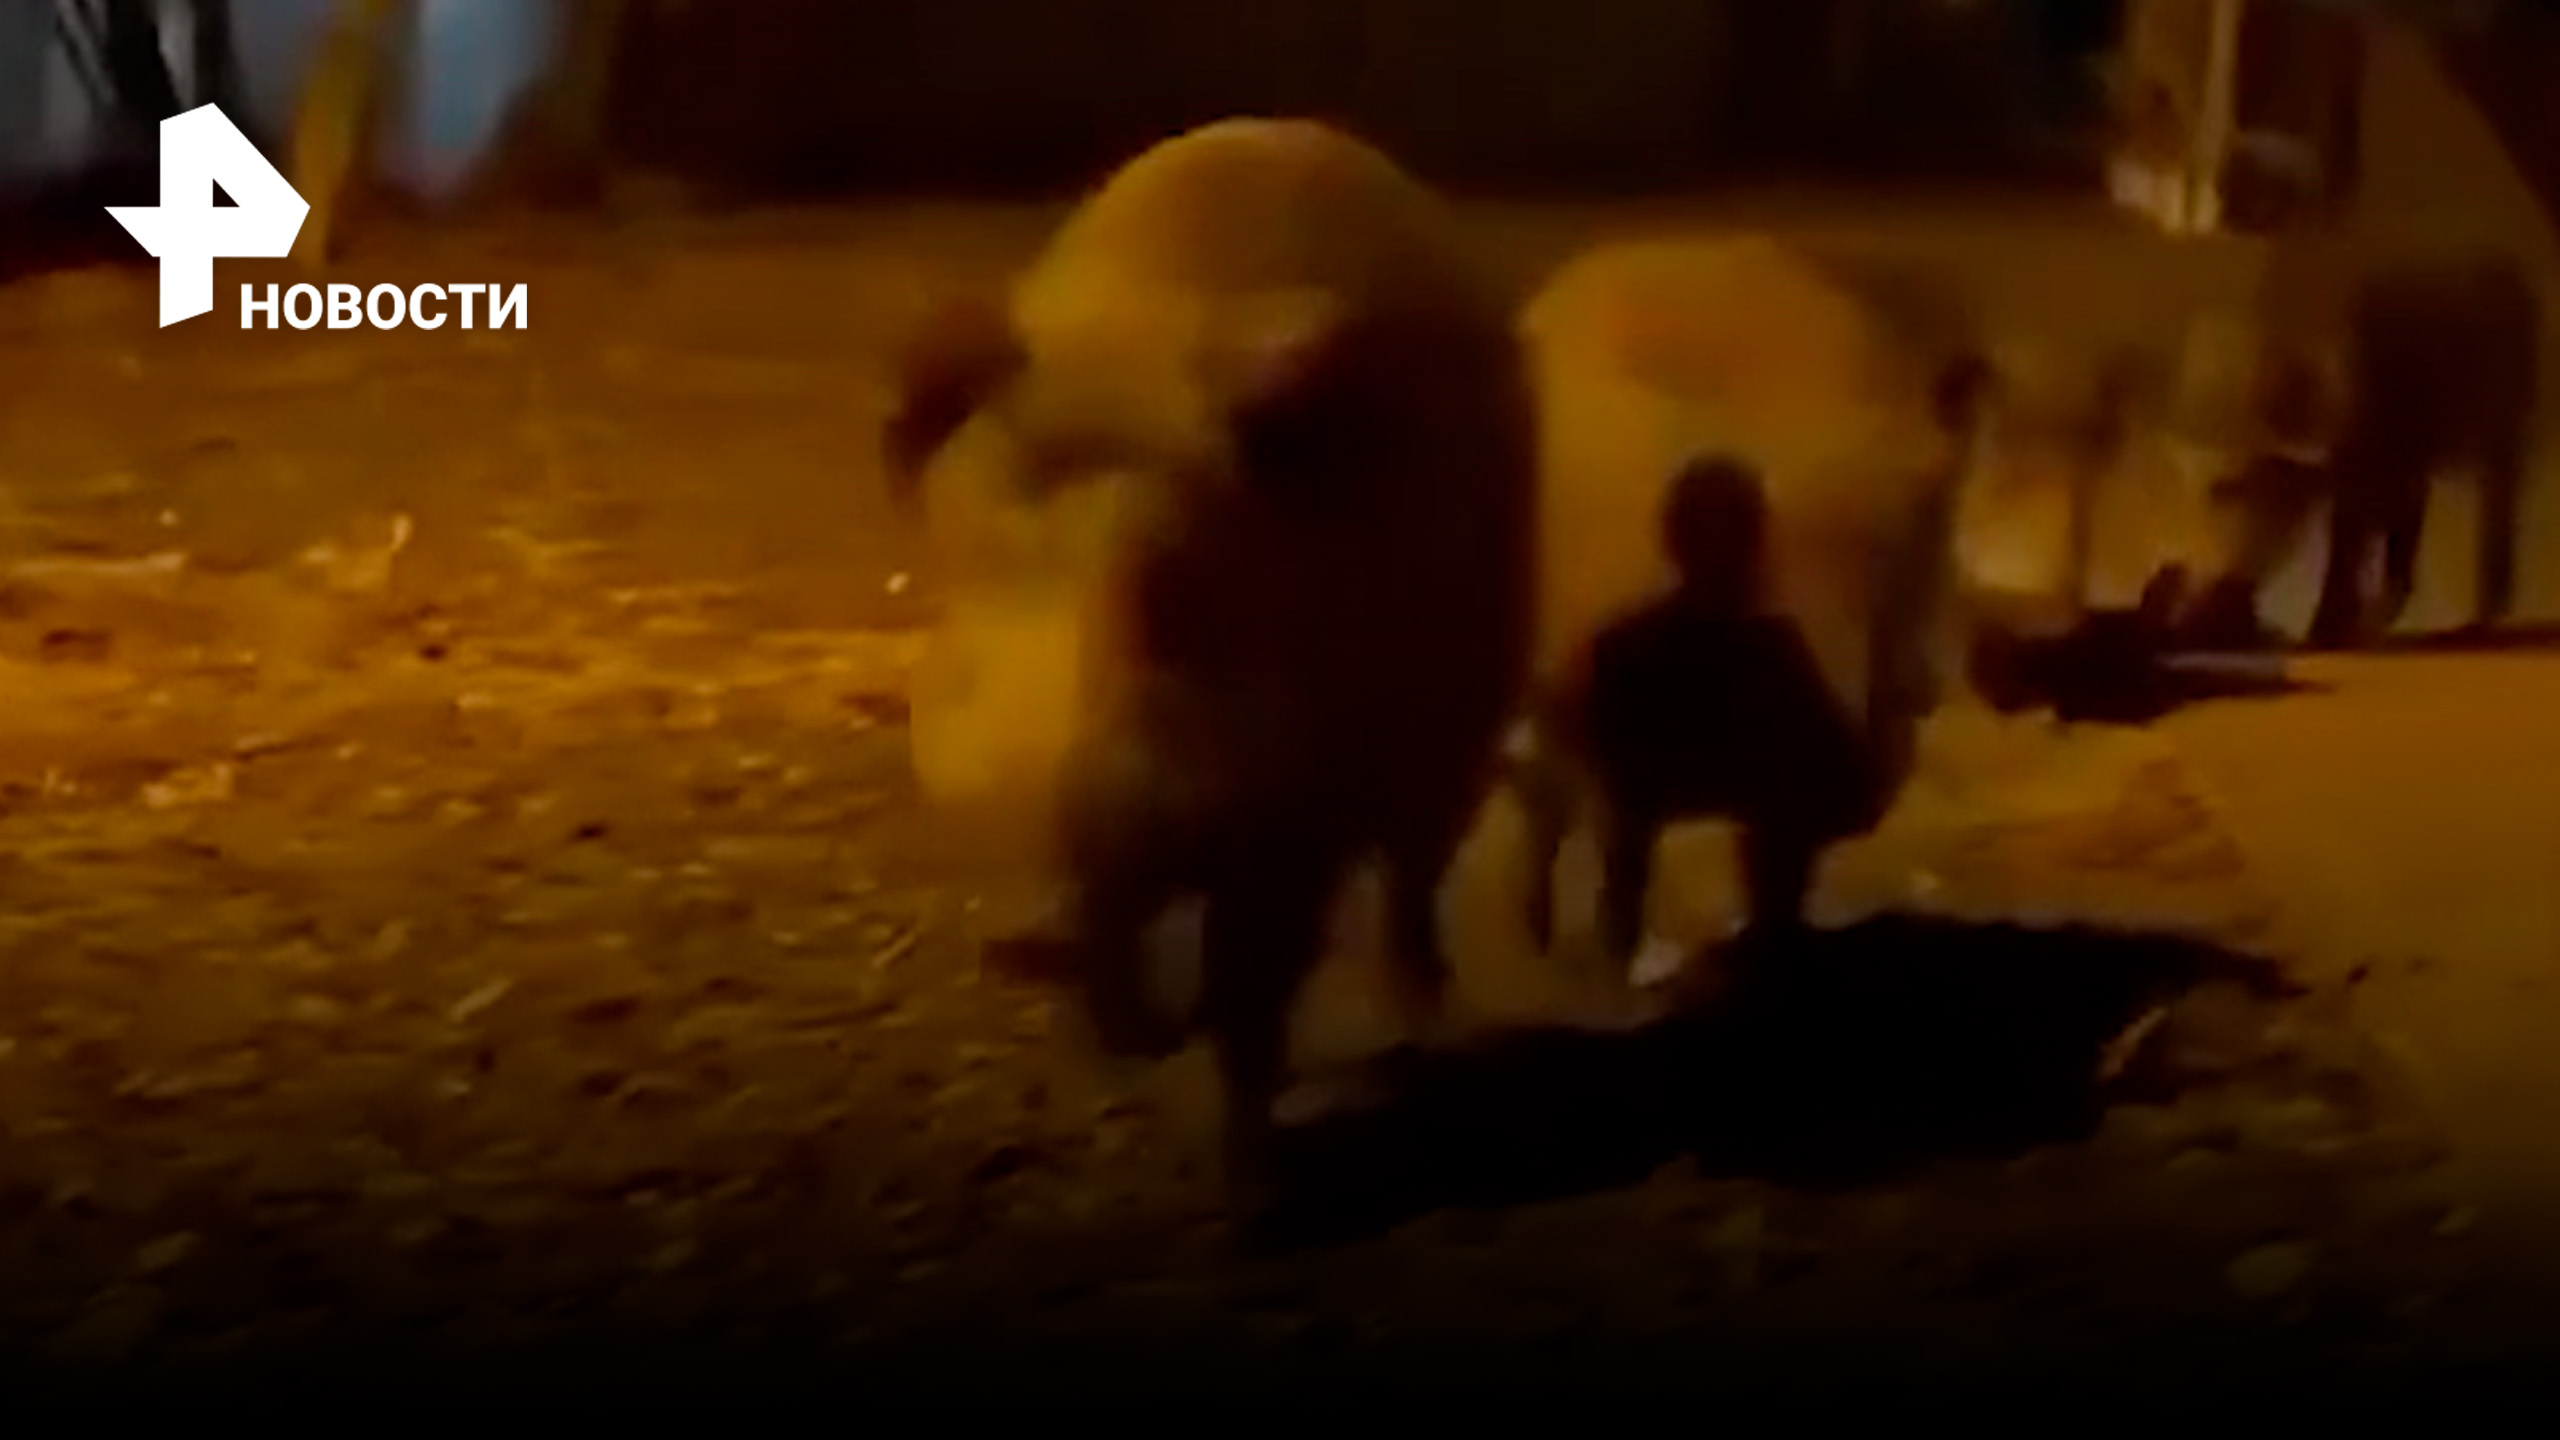 Ну и свиньи: дикие кабаны знатно разворошили мусорку в Мытищах